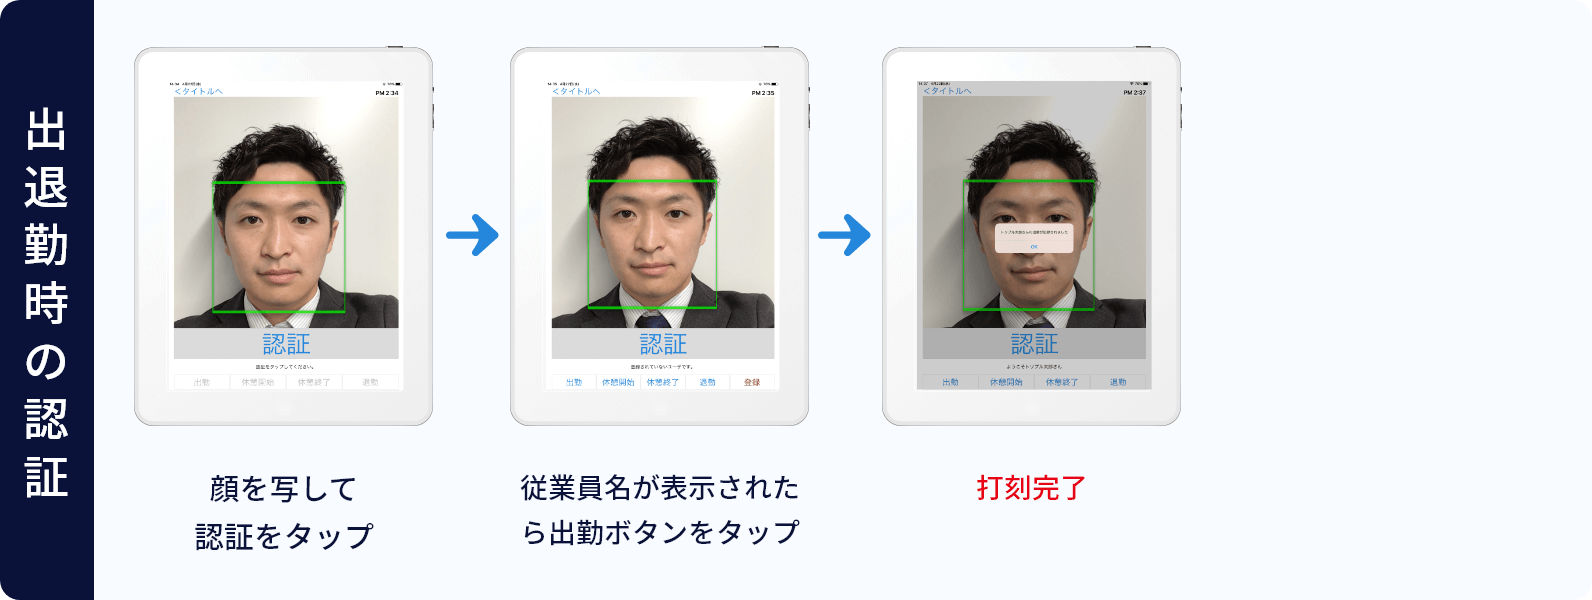 アプリを起動したら画面をタップ→出退勤時の認証：顔を写して認証をタップ→従業員名が表示されたら出勤ボタンをタップ→打刻完了